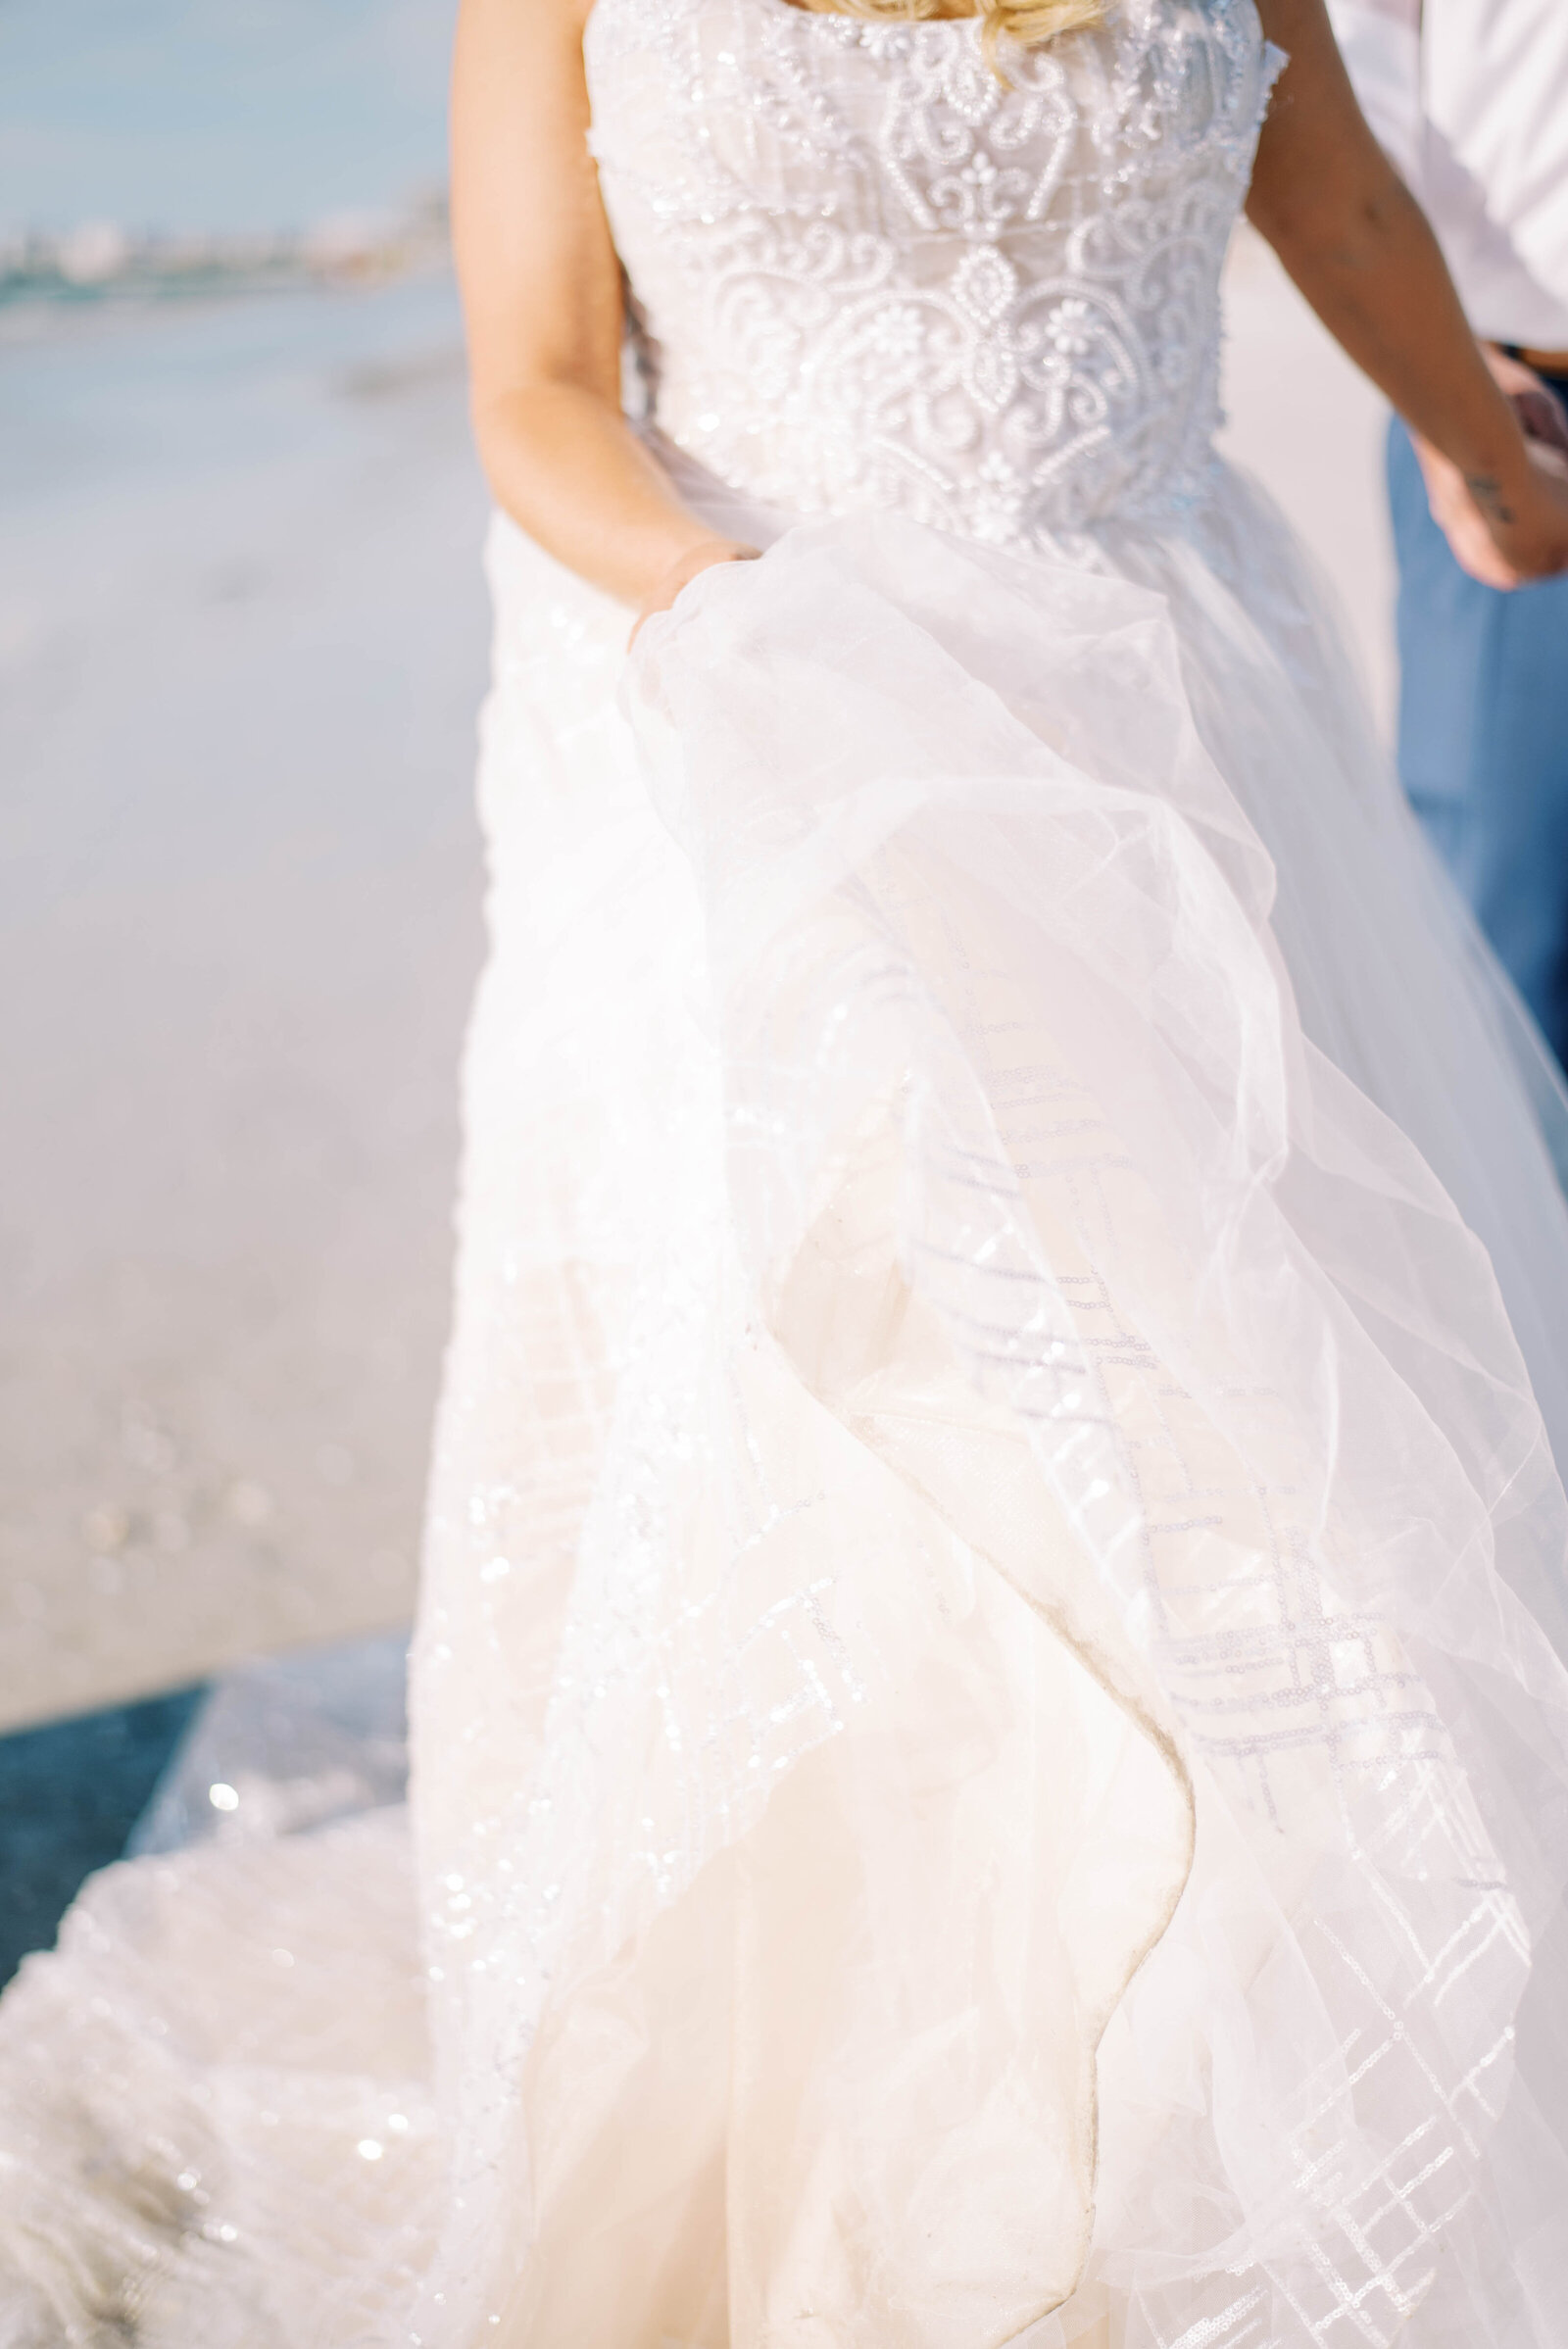 detail shot of wedding dress lace and chiffon dress